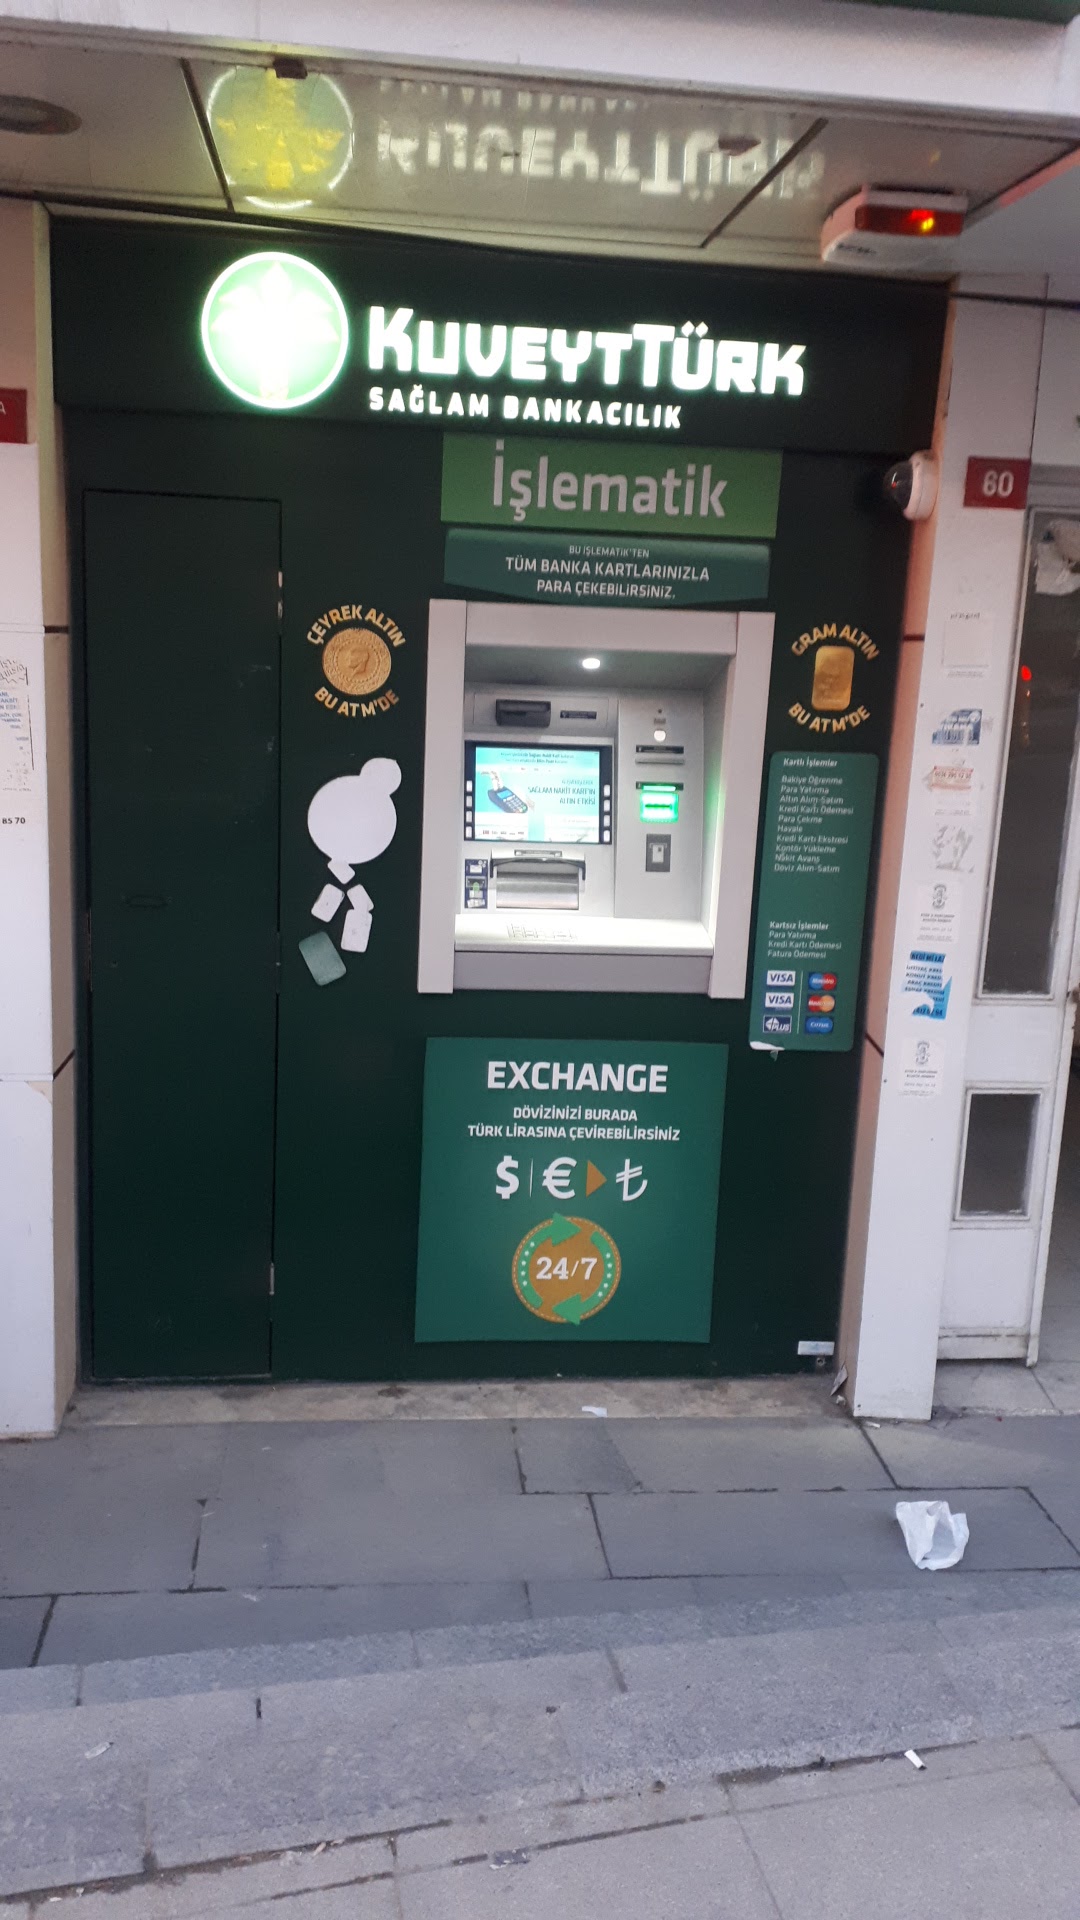 Kuveyt Trk - Esenyurt Devlet Hastahanesi ATM